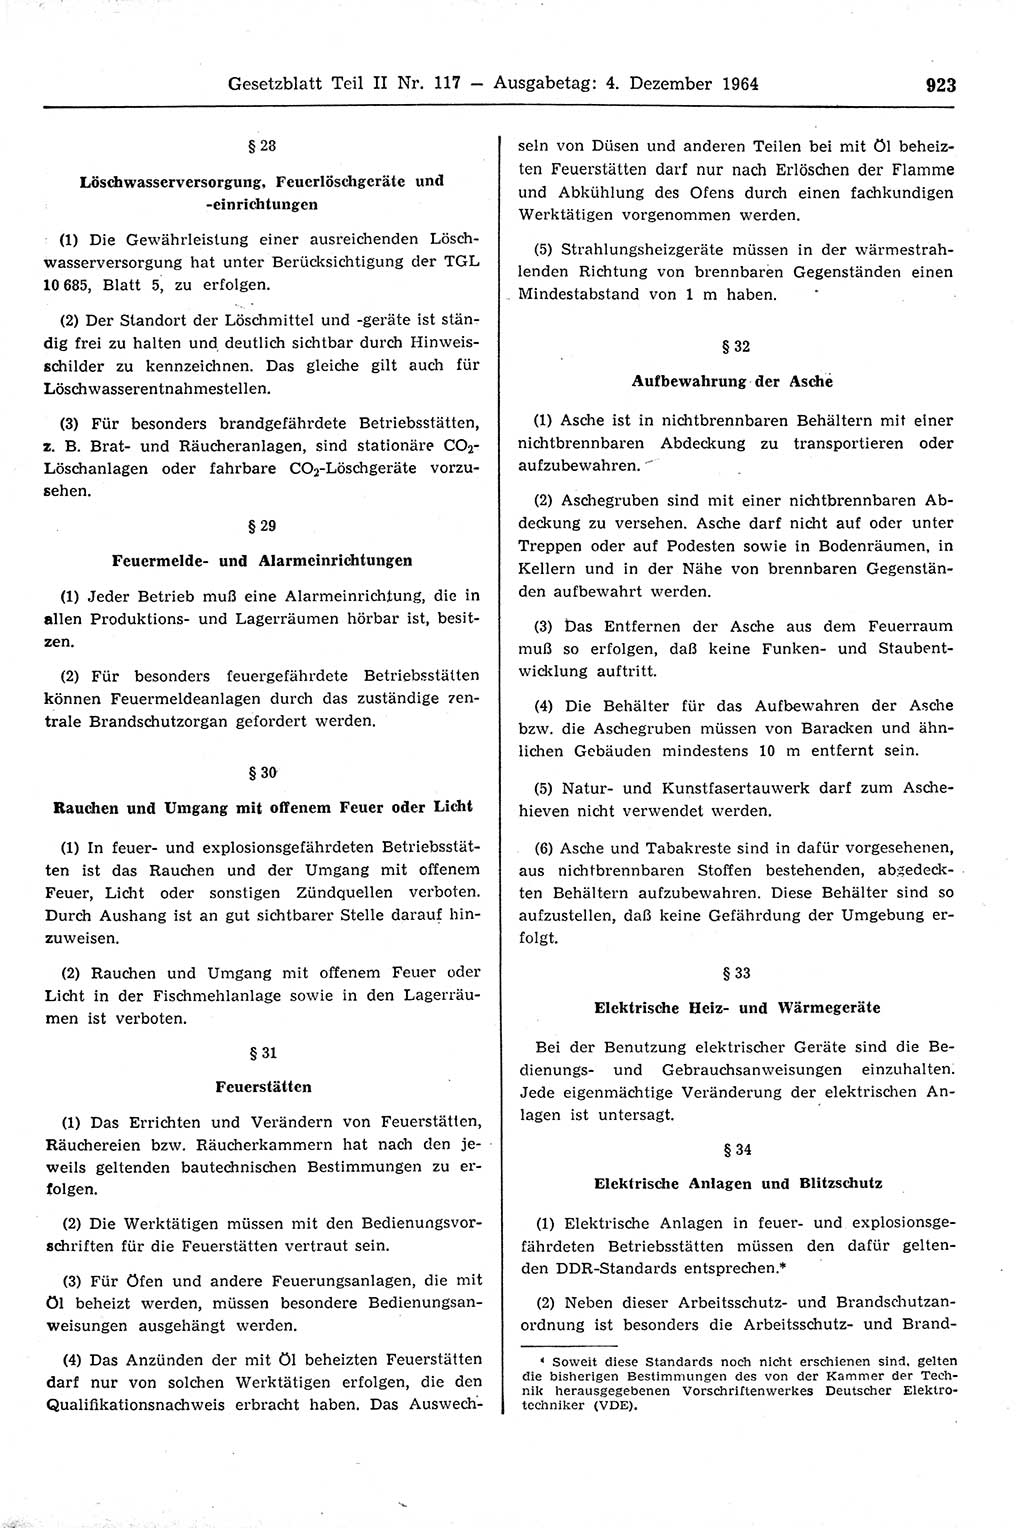 Gesetzblatt (GBl.) der Deutschen Demokratischen Republik (DDR) Teil ⅠⅠ 1964, Seite 923 (GBl. DDR ⅠⅠ 1964, S. 923)